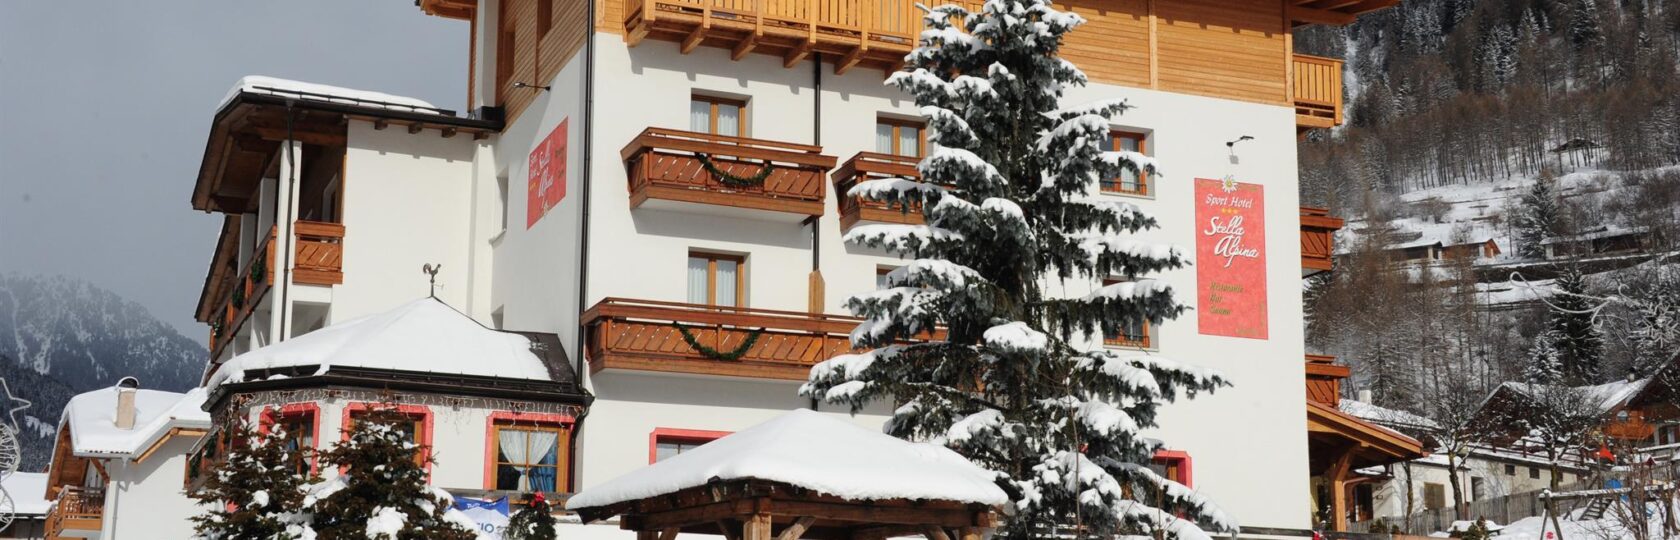 Hotel Stella Alpina Terme di Pejo_inverno